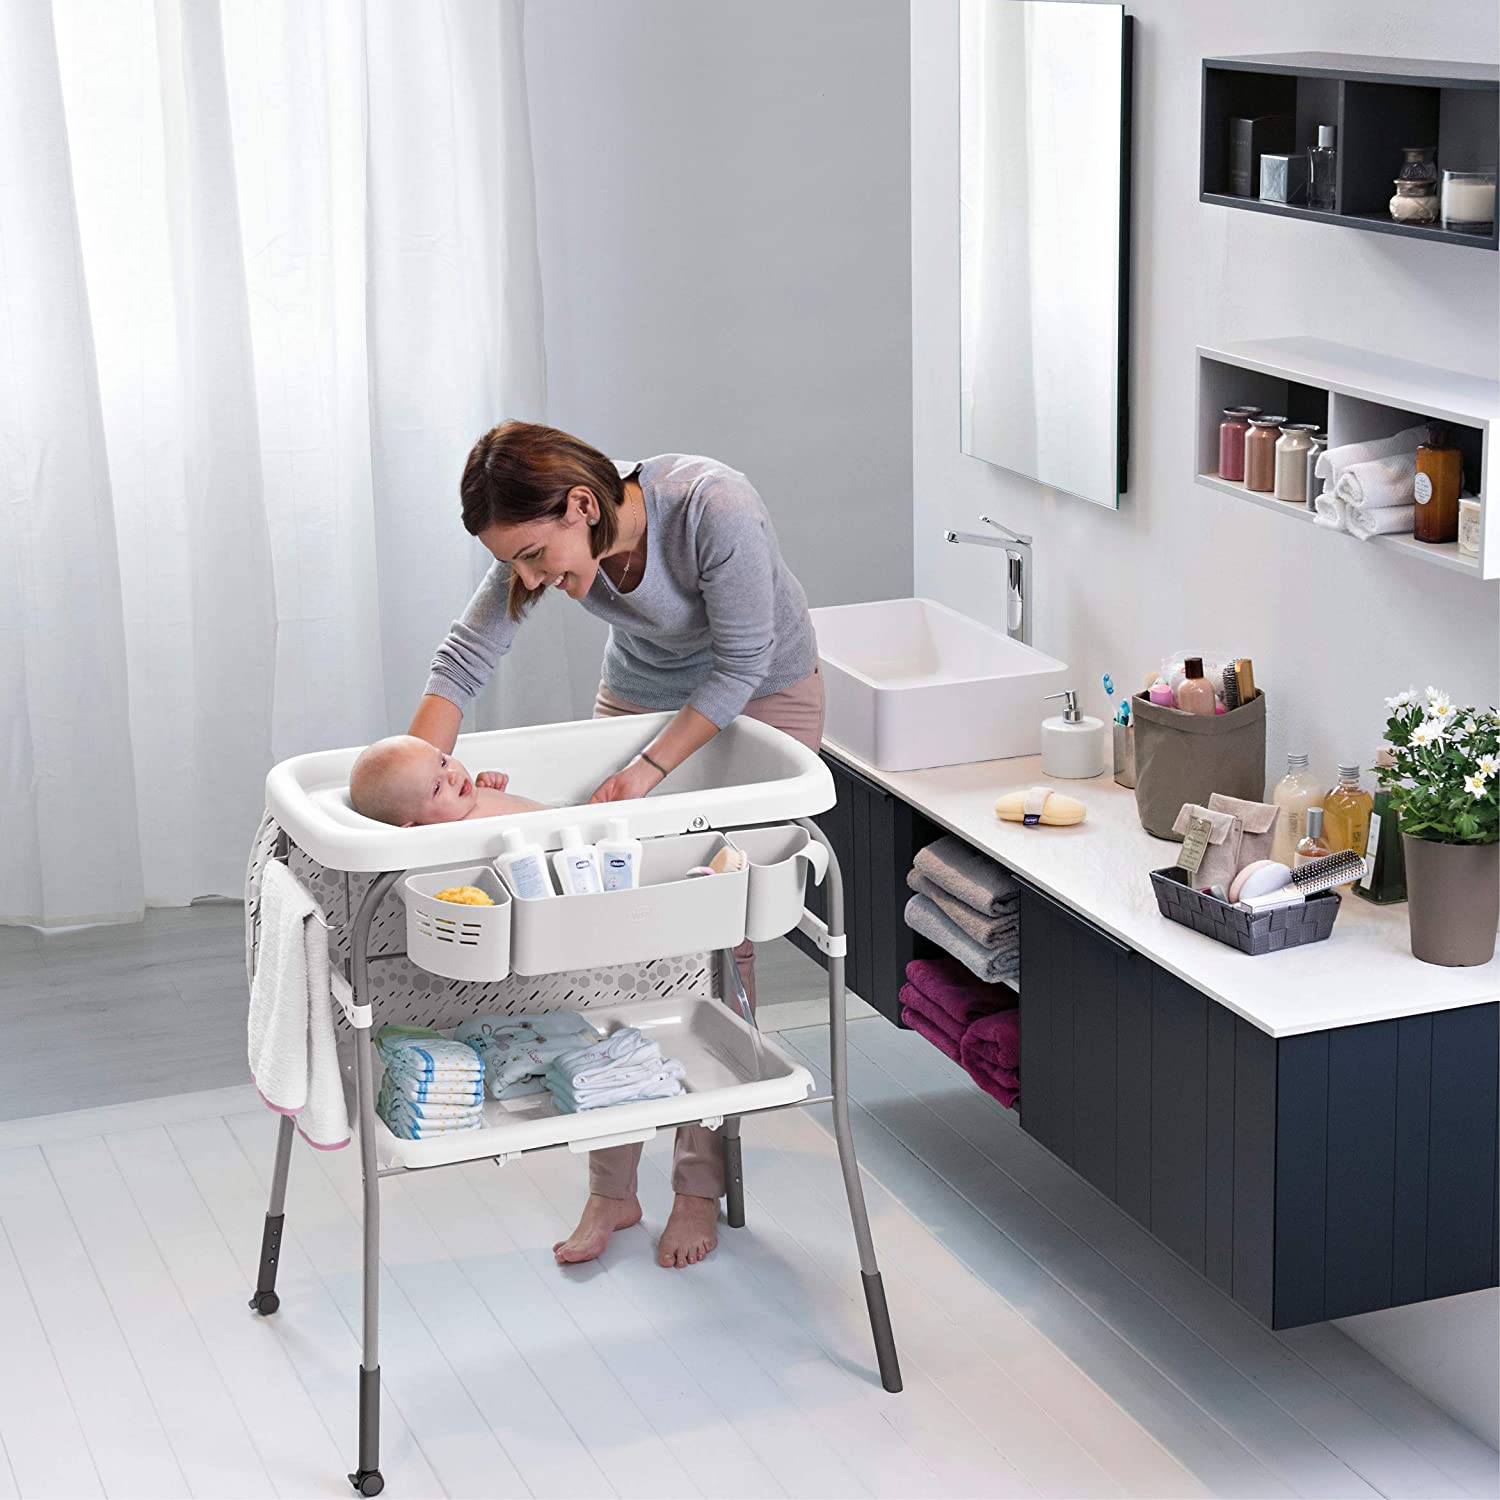 Bañeras y Cambiadores Bebés: Plegables, Con Patas.. - Carrefour